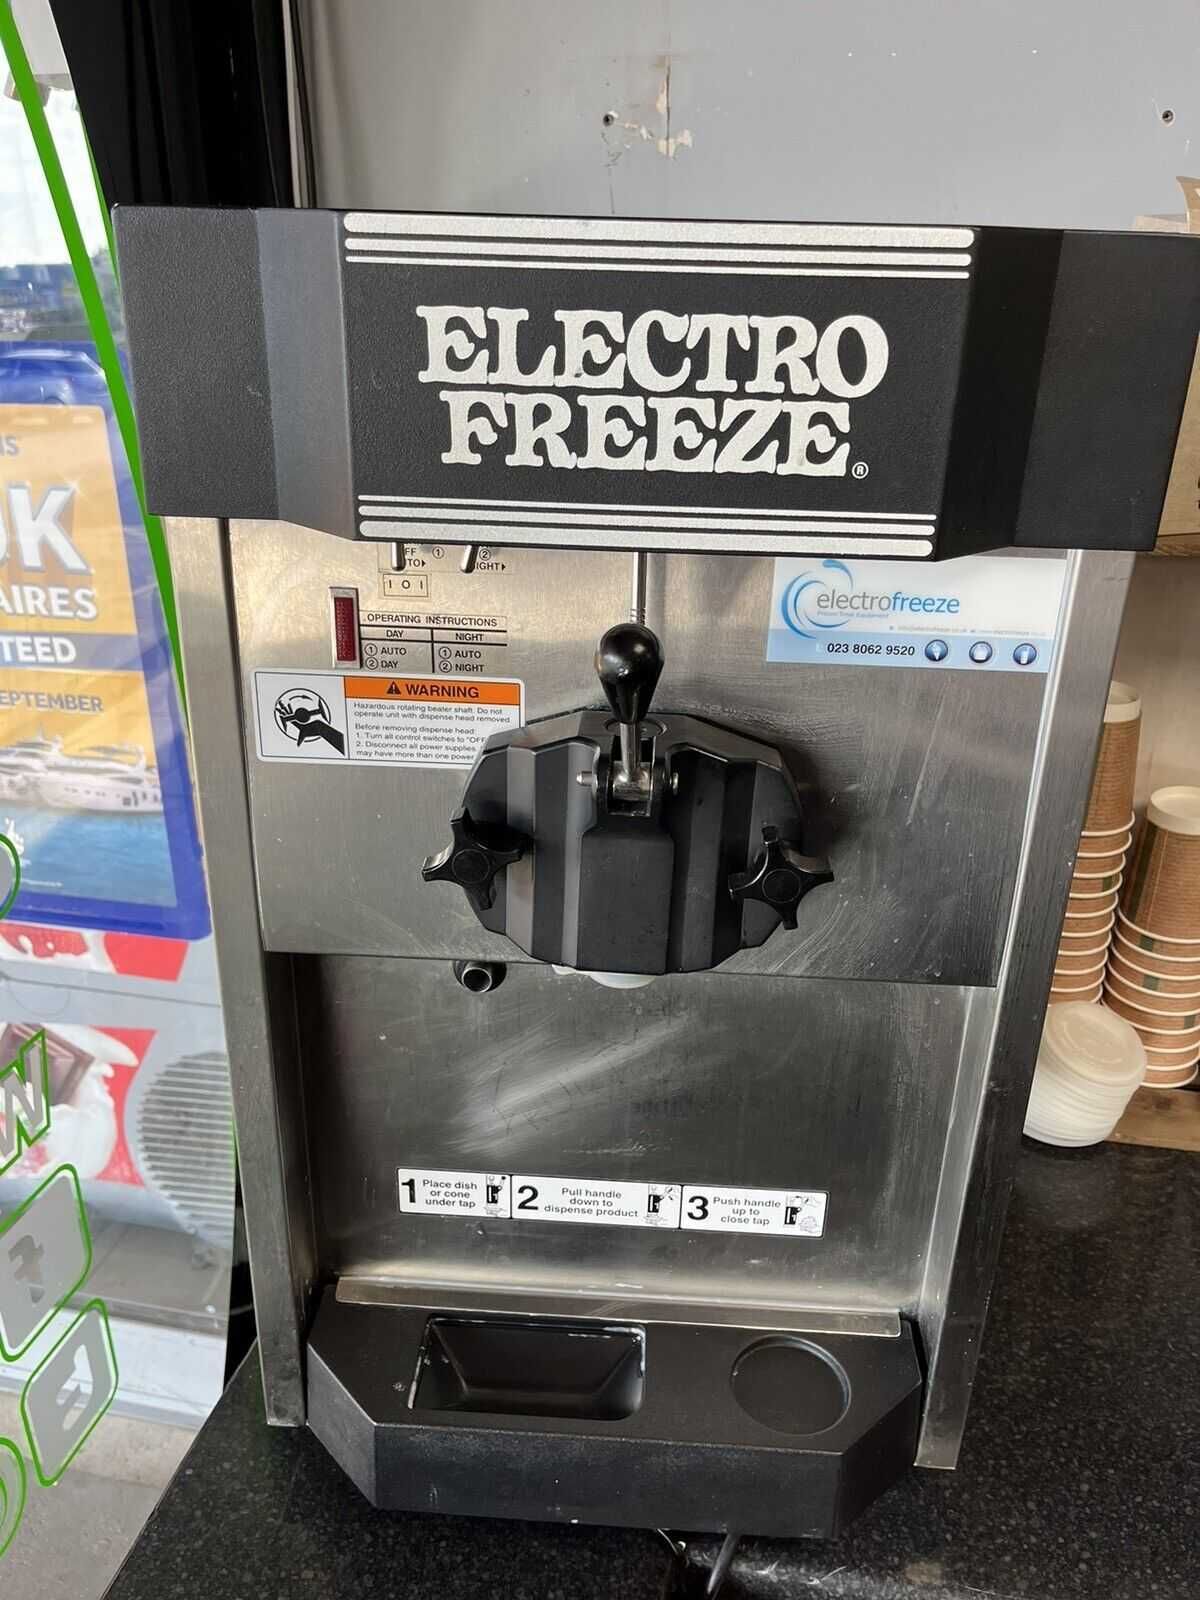 як в макдональдсі! фрізер для морозива Electro freeze(USA) на 220В